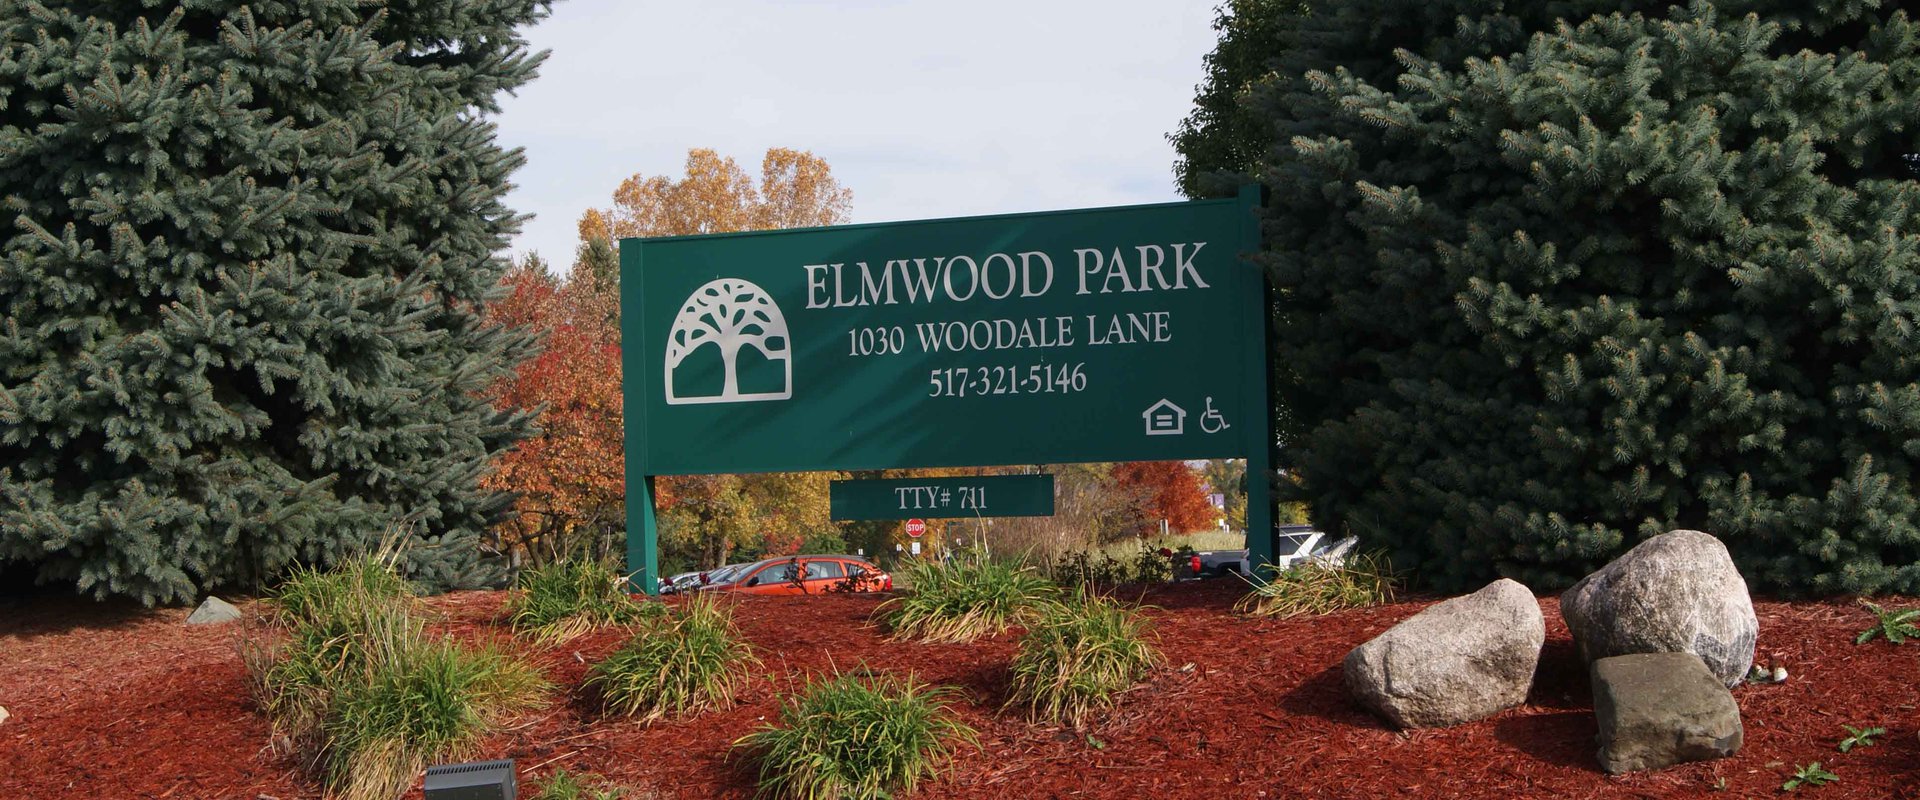 Elmwood Park sign